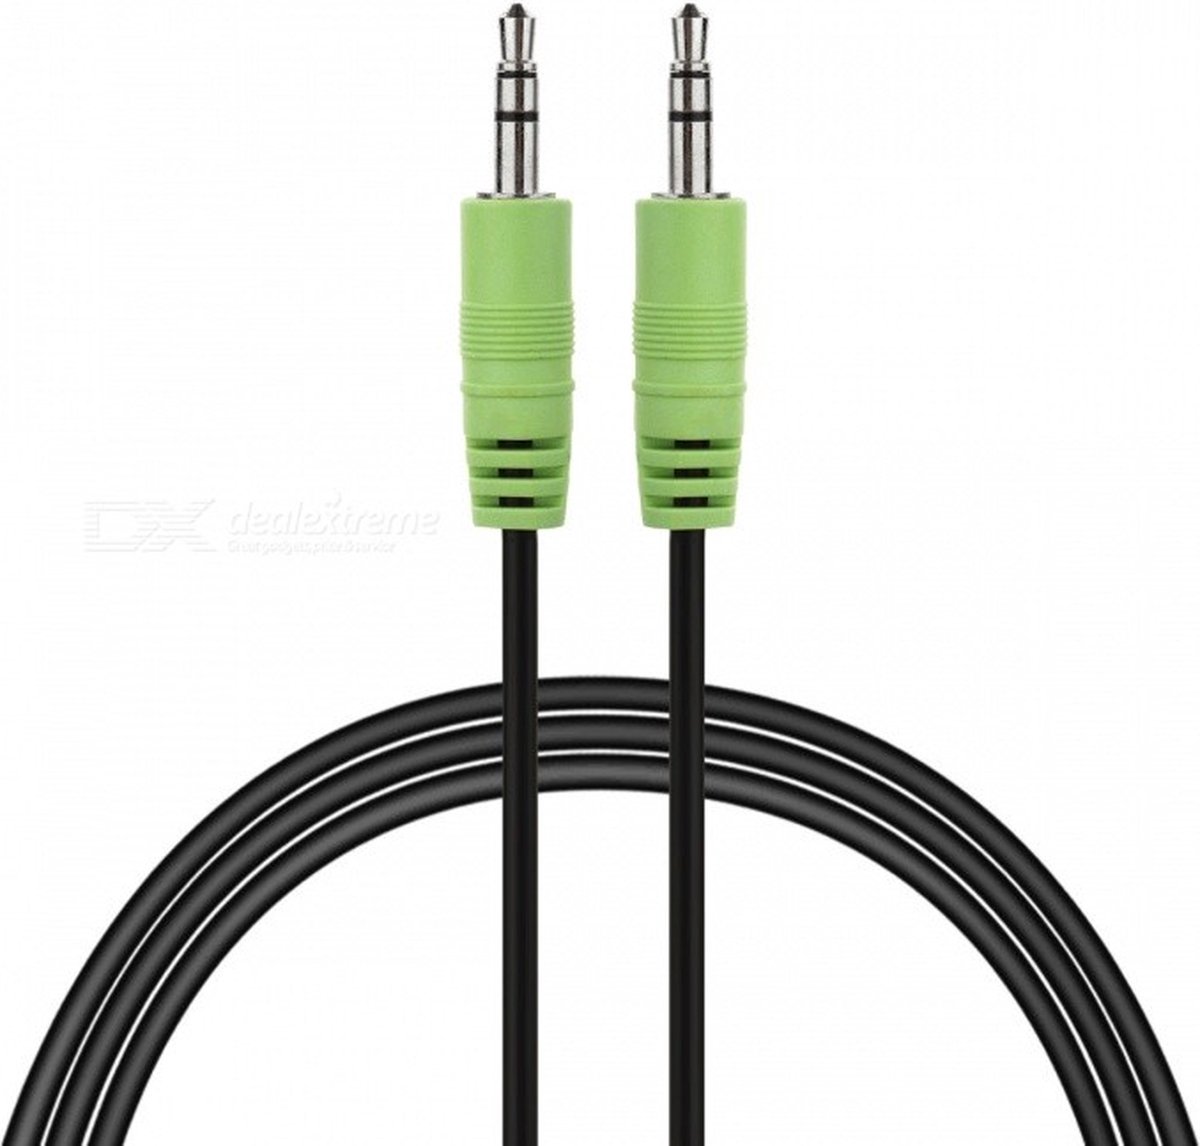 Audio Kabel 3.5mm Jack Aux Kabel Stereo 1 meter zwart/groen. - Merkloos